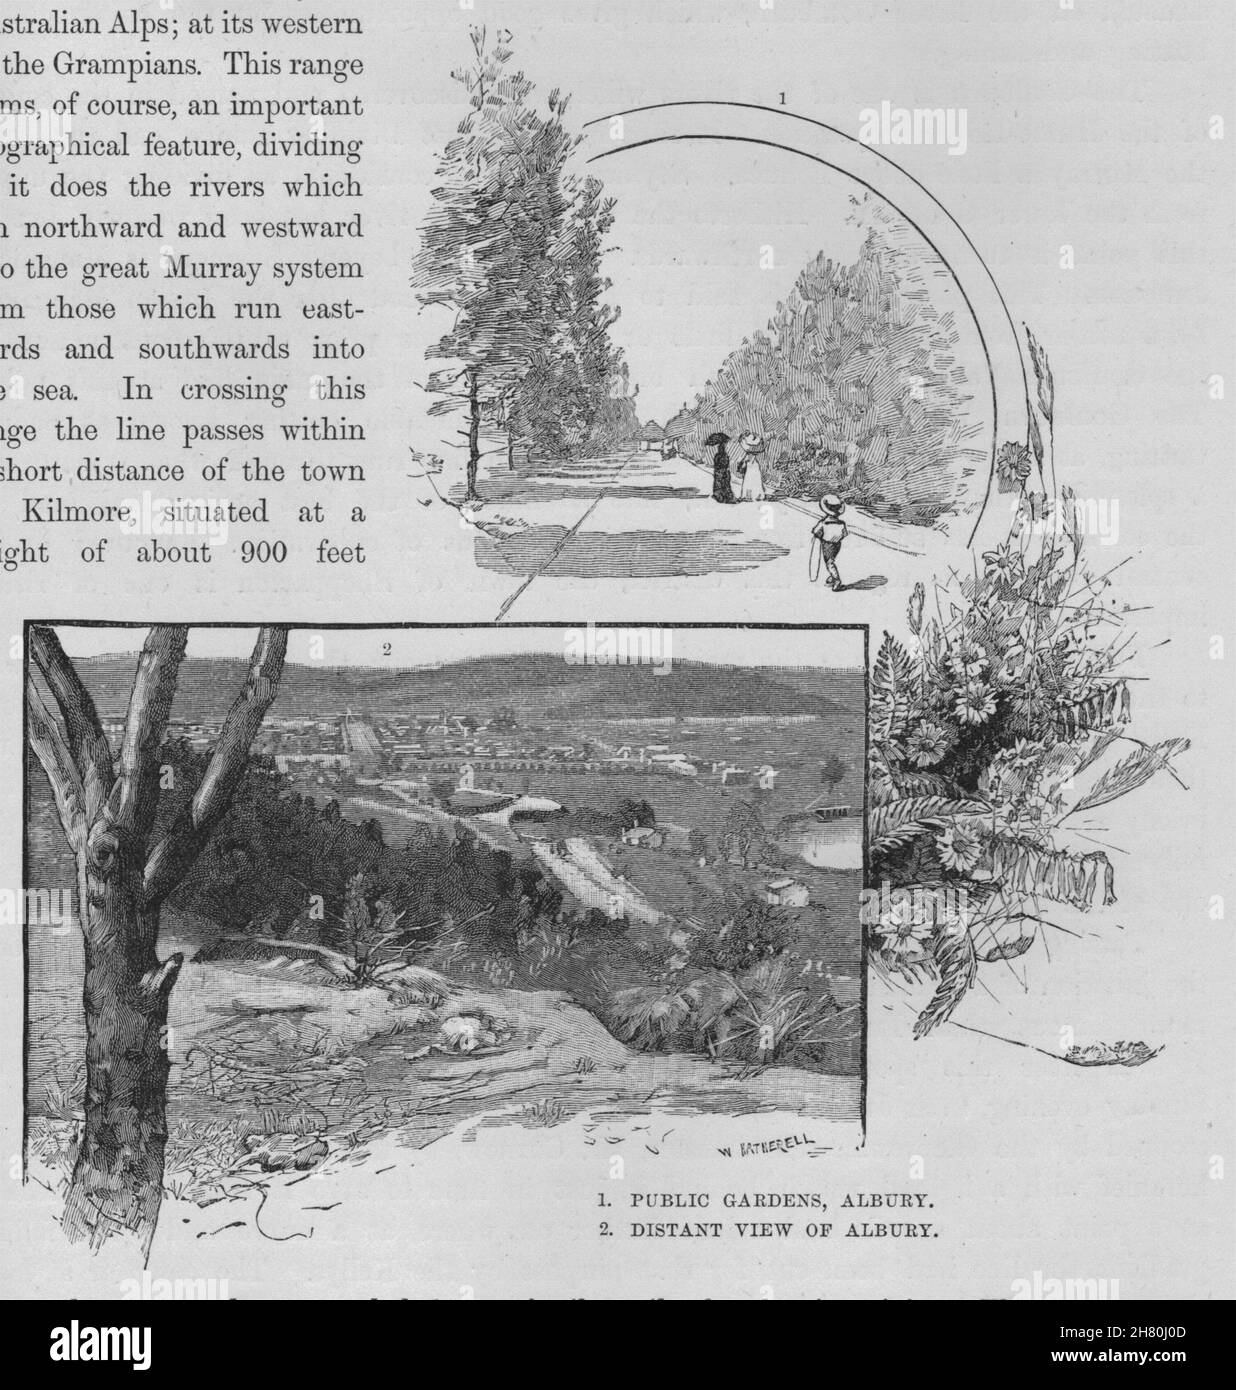 Giardini pubblici, Albury e vista in lontananza Albury. Australia 1890 antica stampa Foto Stock